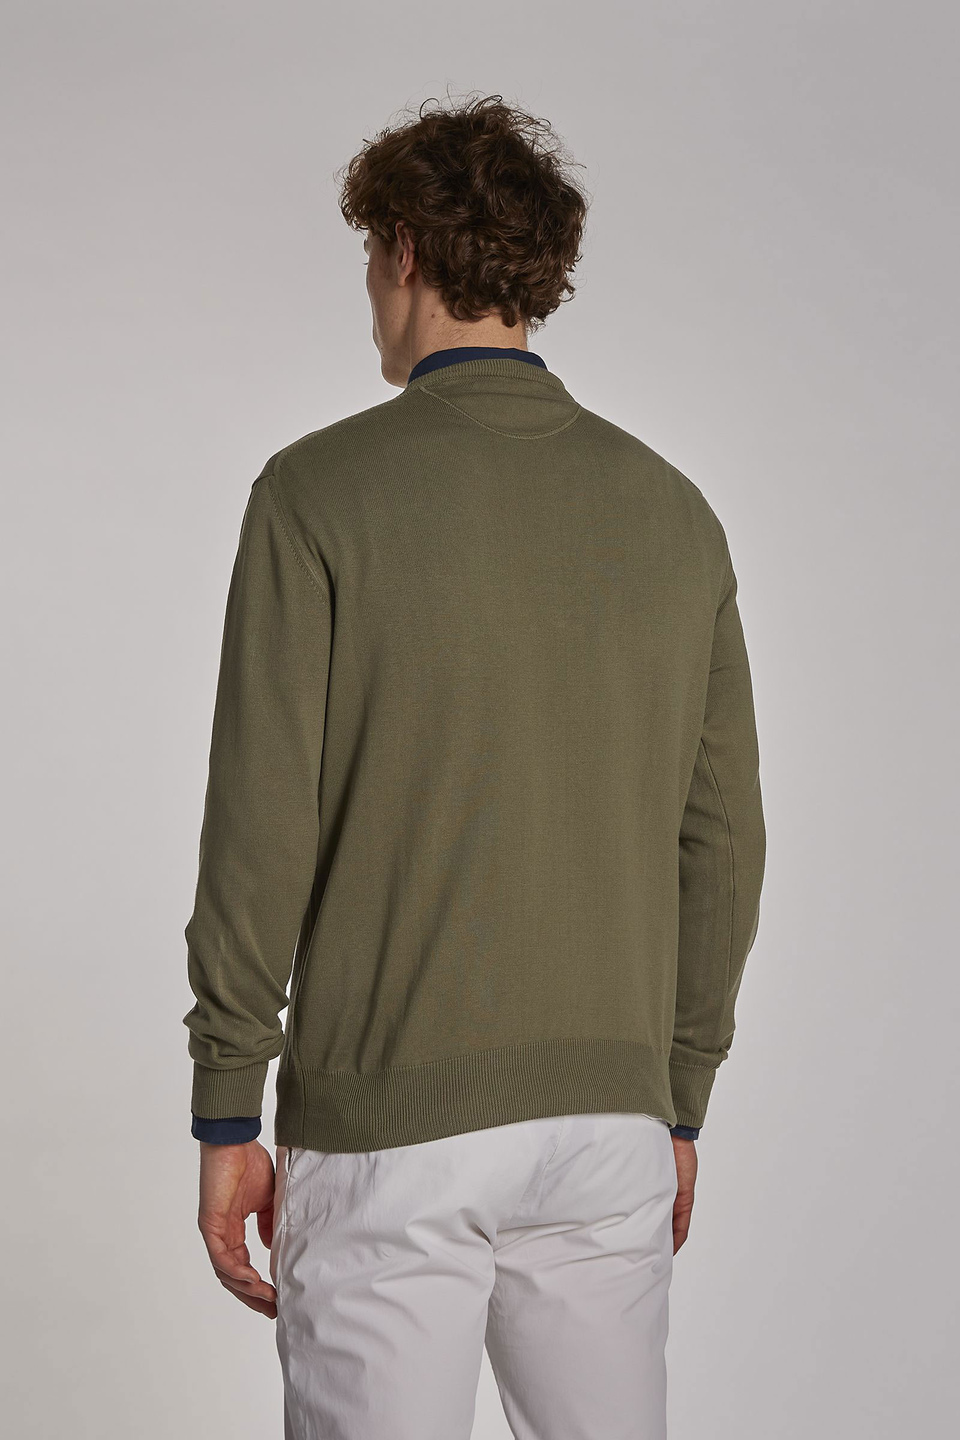 Men's long-sleeved regular-fit cotton crew-neck sweater Bronze Green La ...